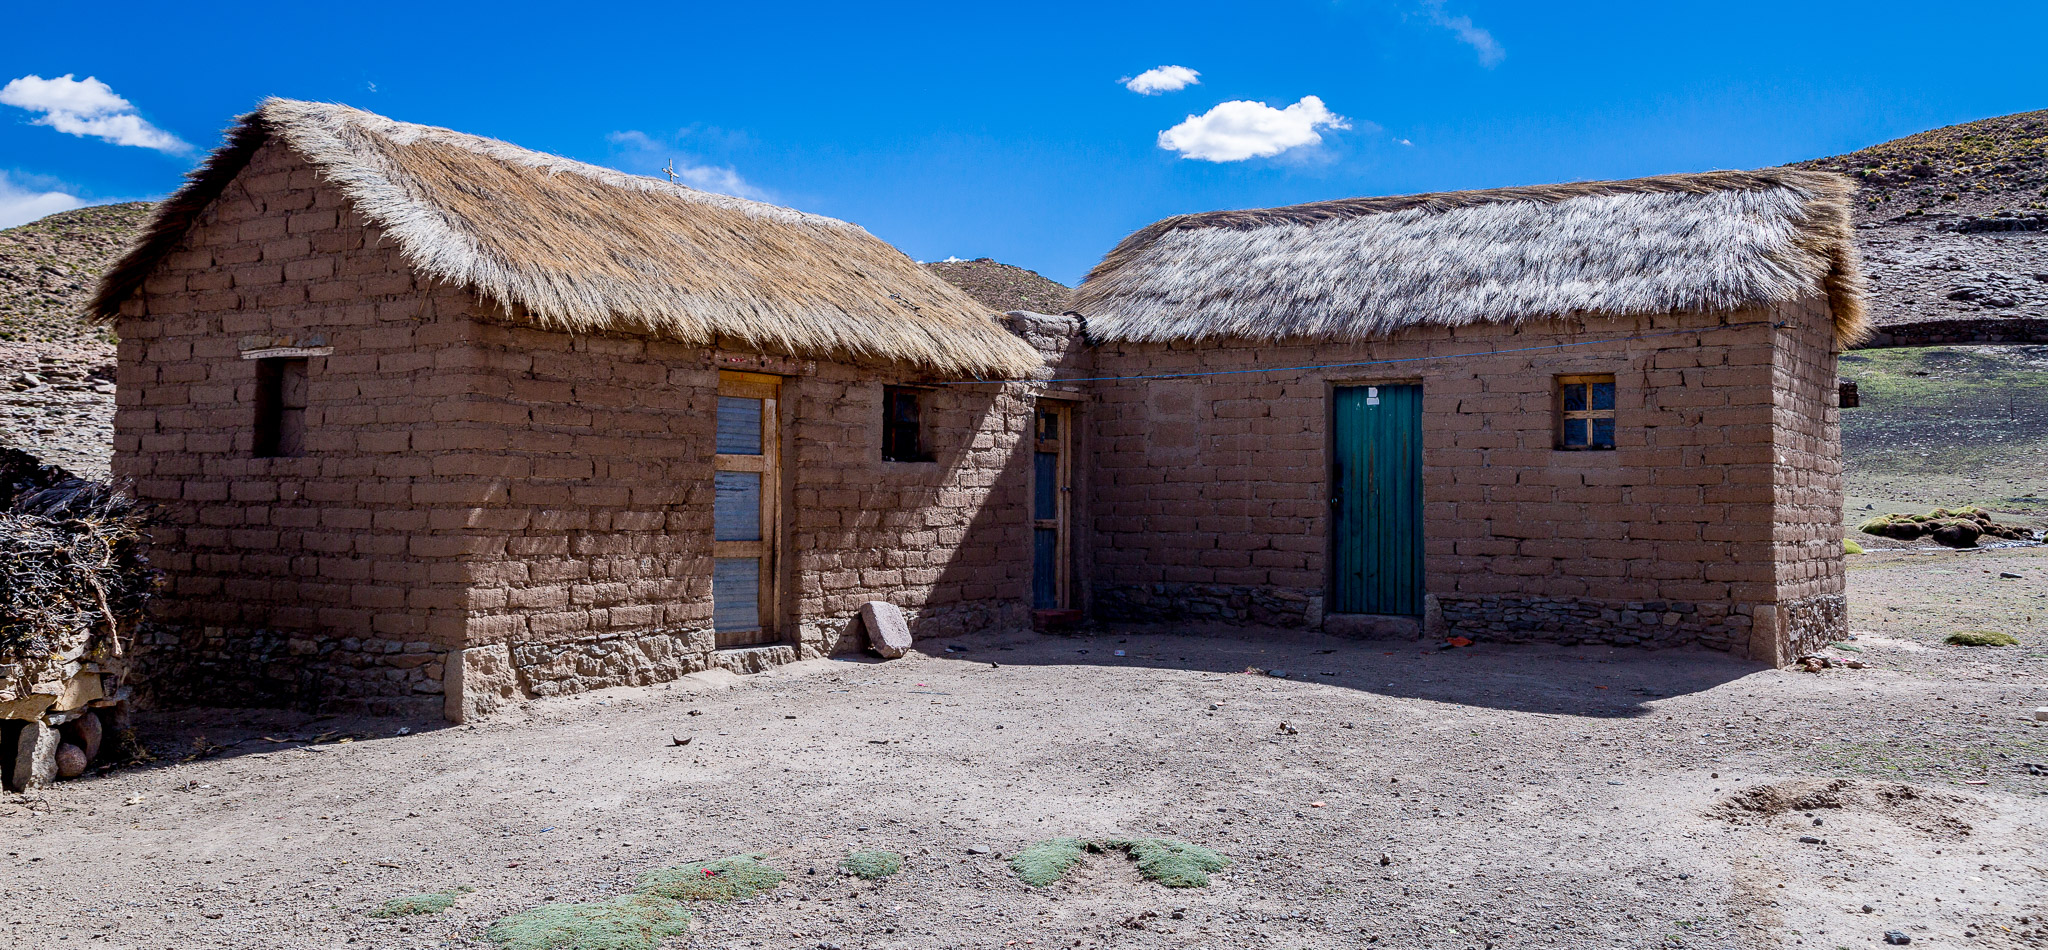 Unnamed Altiplano settlement